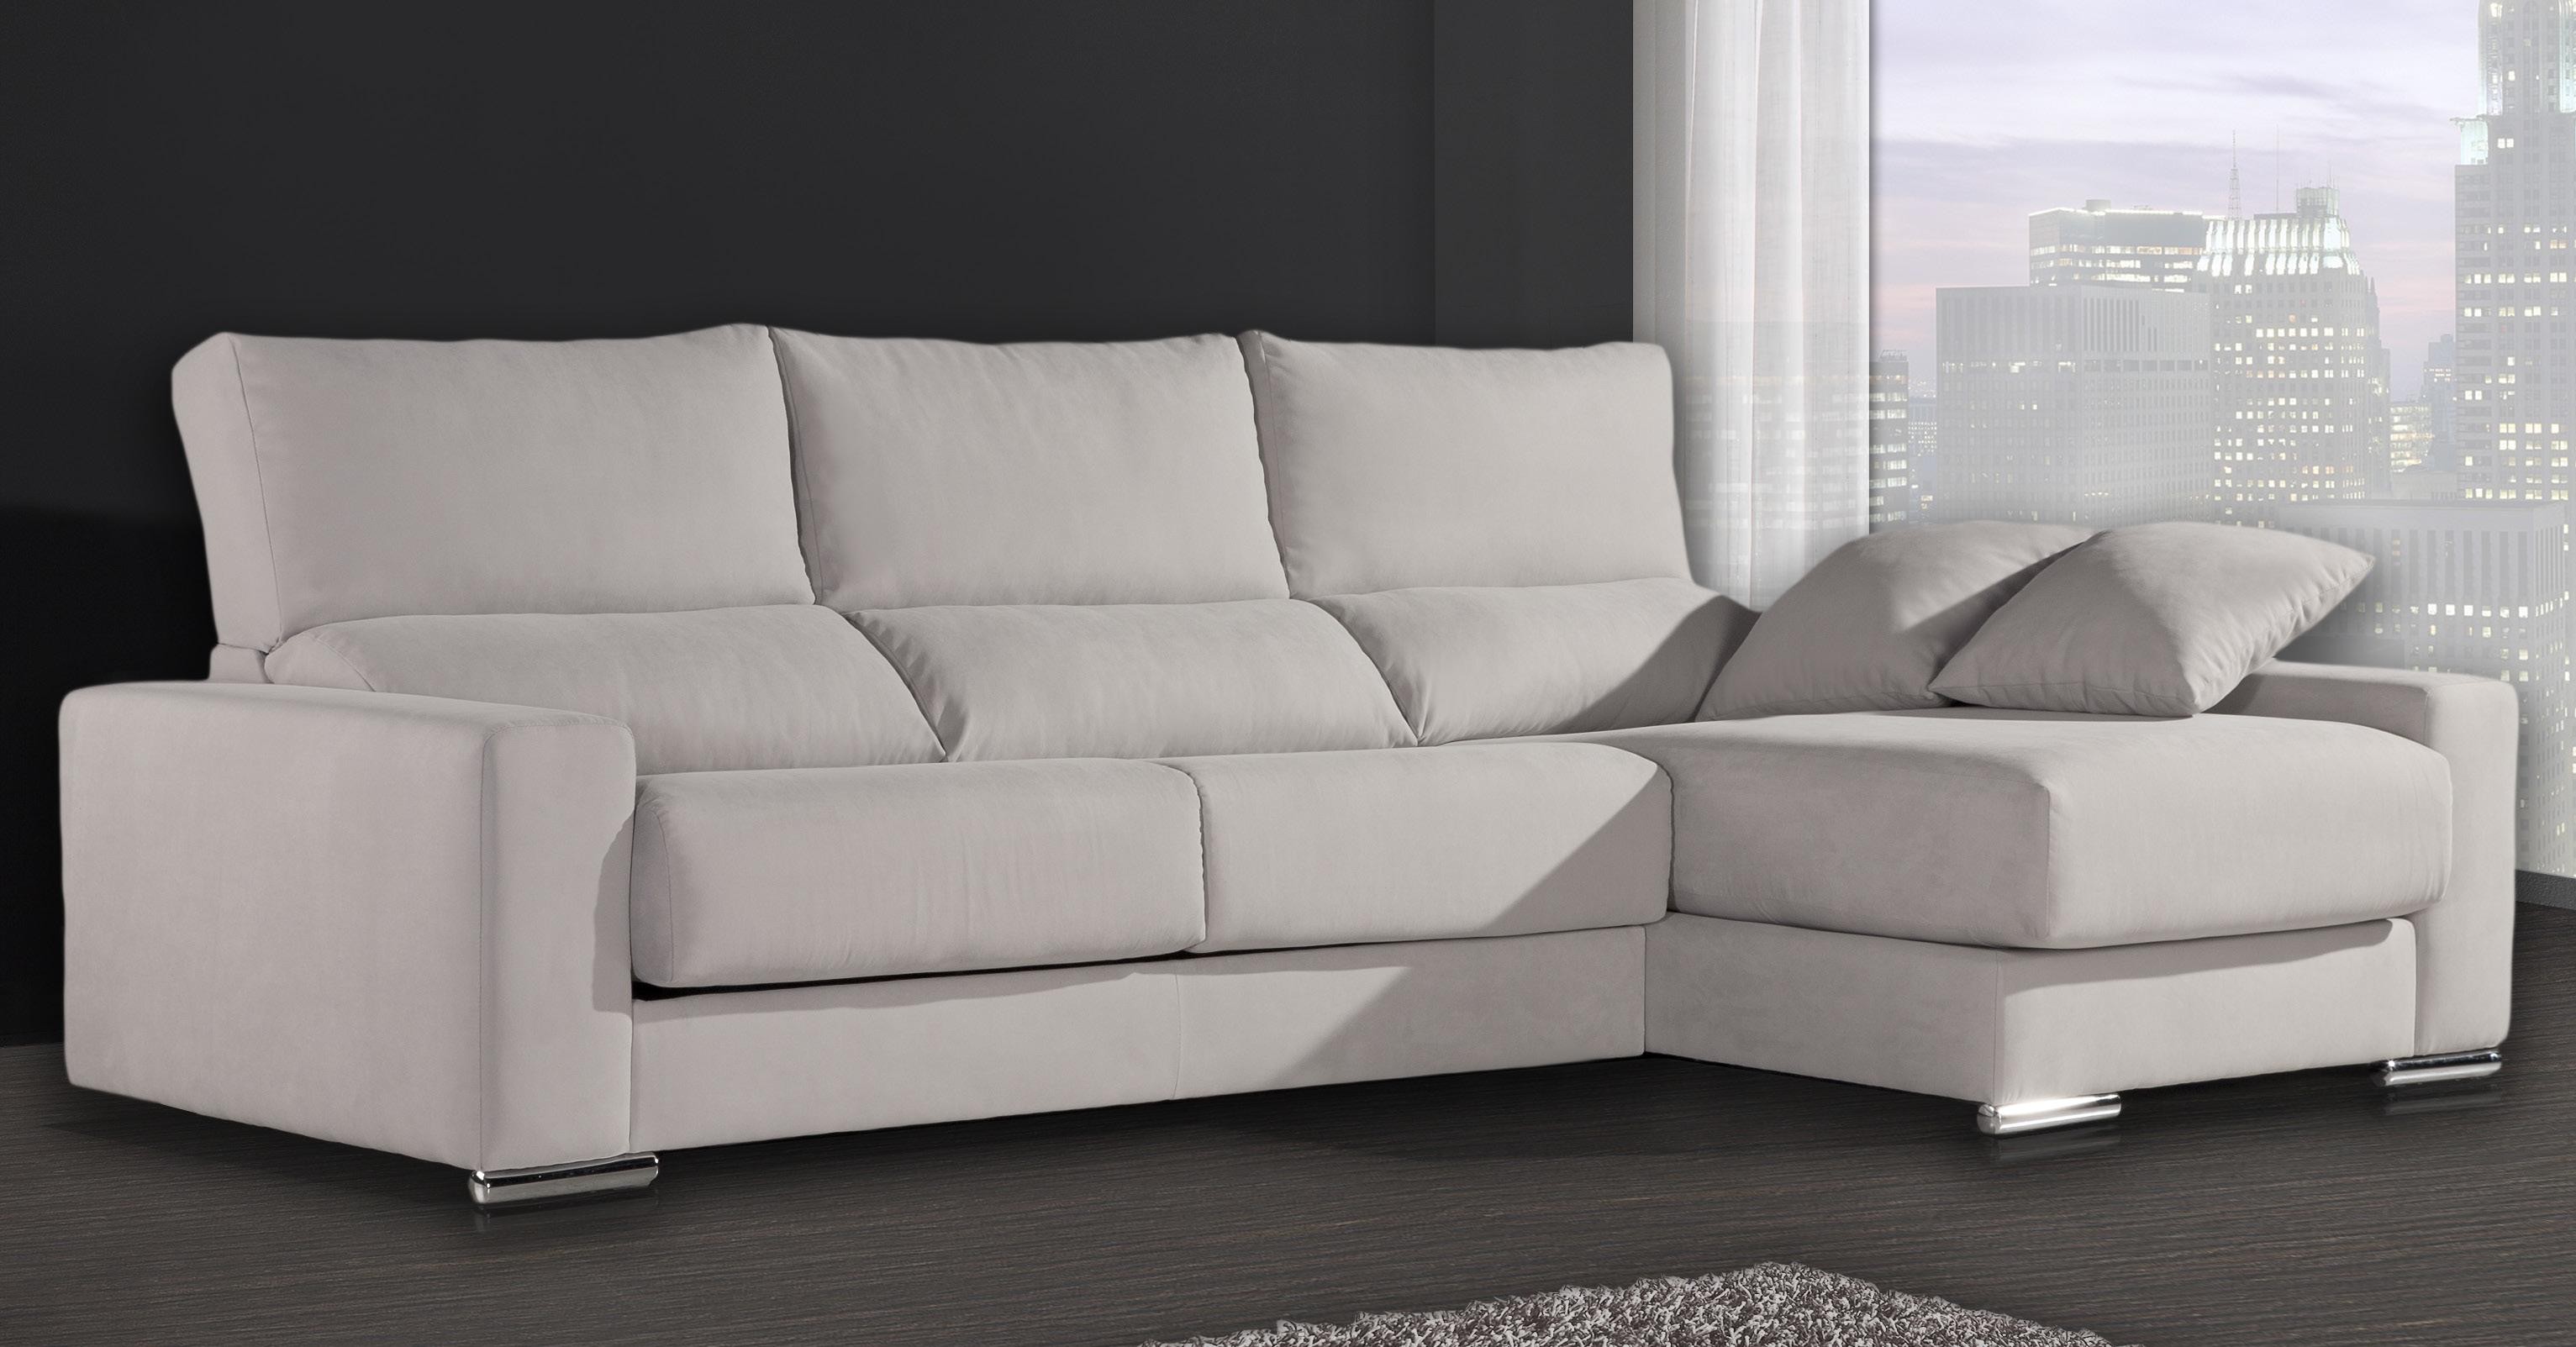 Venta de sofas baratos online - Comprar sofa economico Valencia